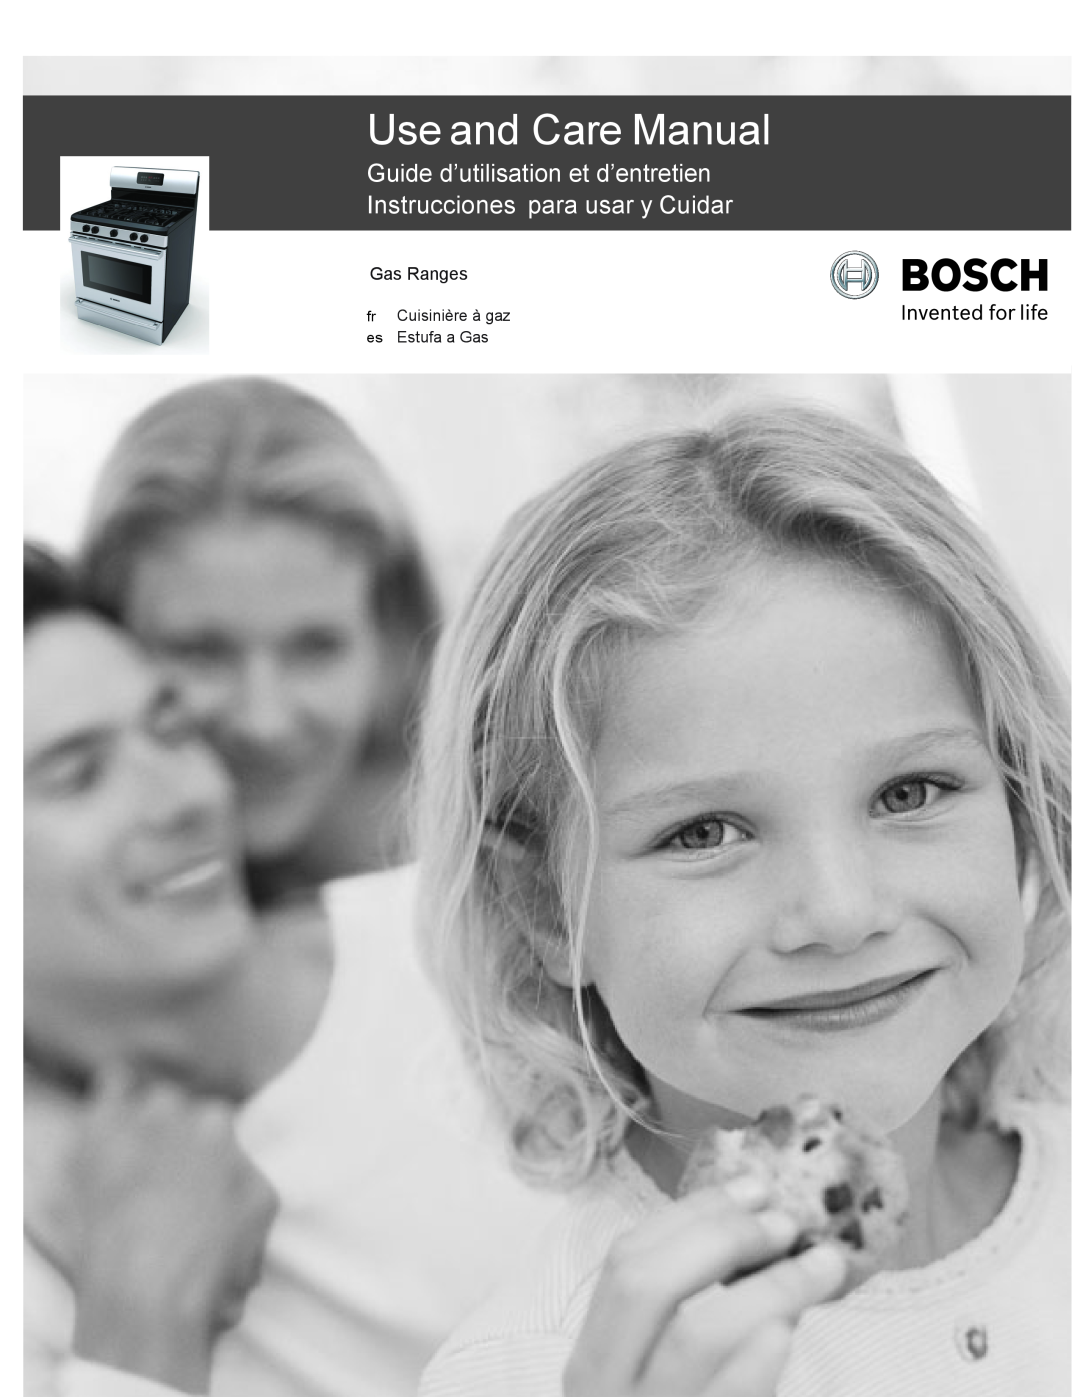 Bosch Appliances HGS3023UC manual Use and Care Manual, Guide d’utilisation et d’entretien Instrucciones para usar y Cuidar 